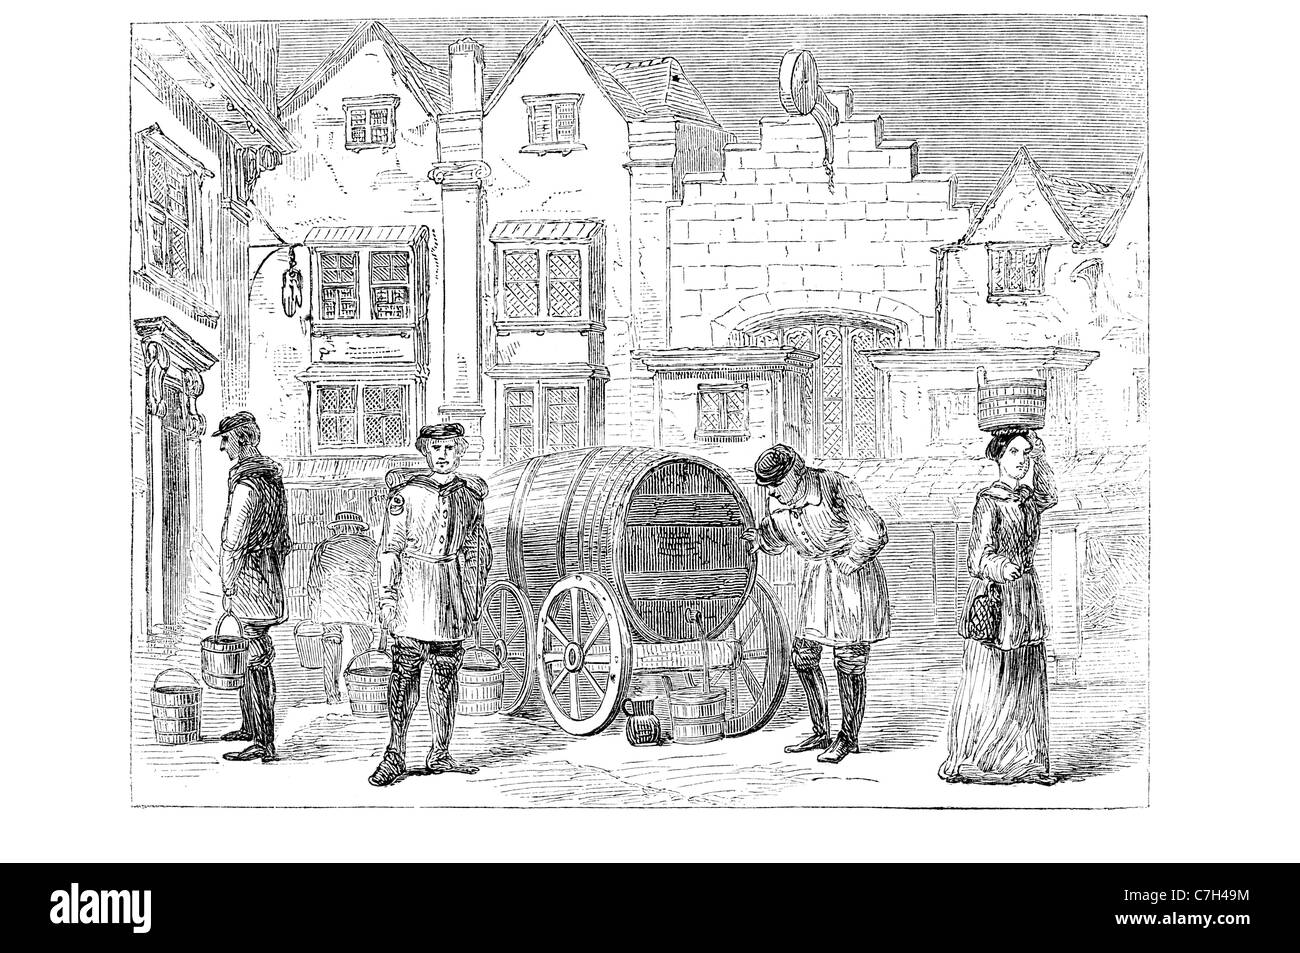 Vieux Londres porteur d'eau à partir de la gravure ancienne Banque D'Images